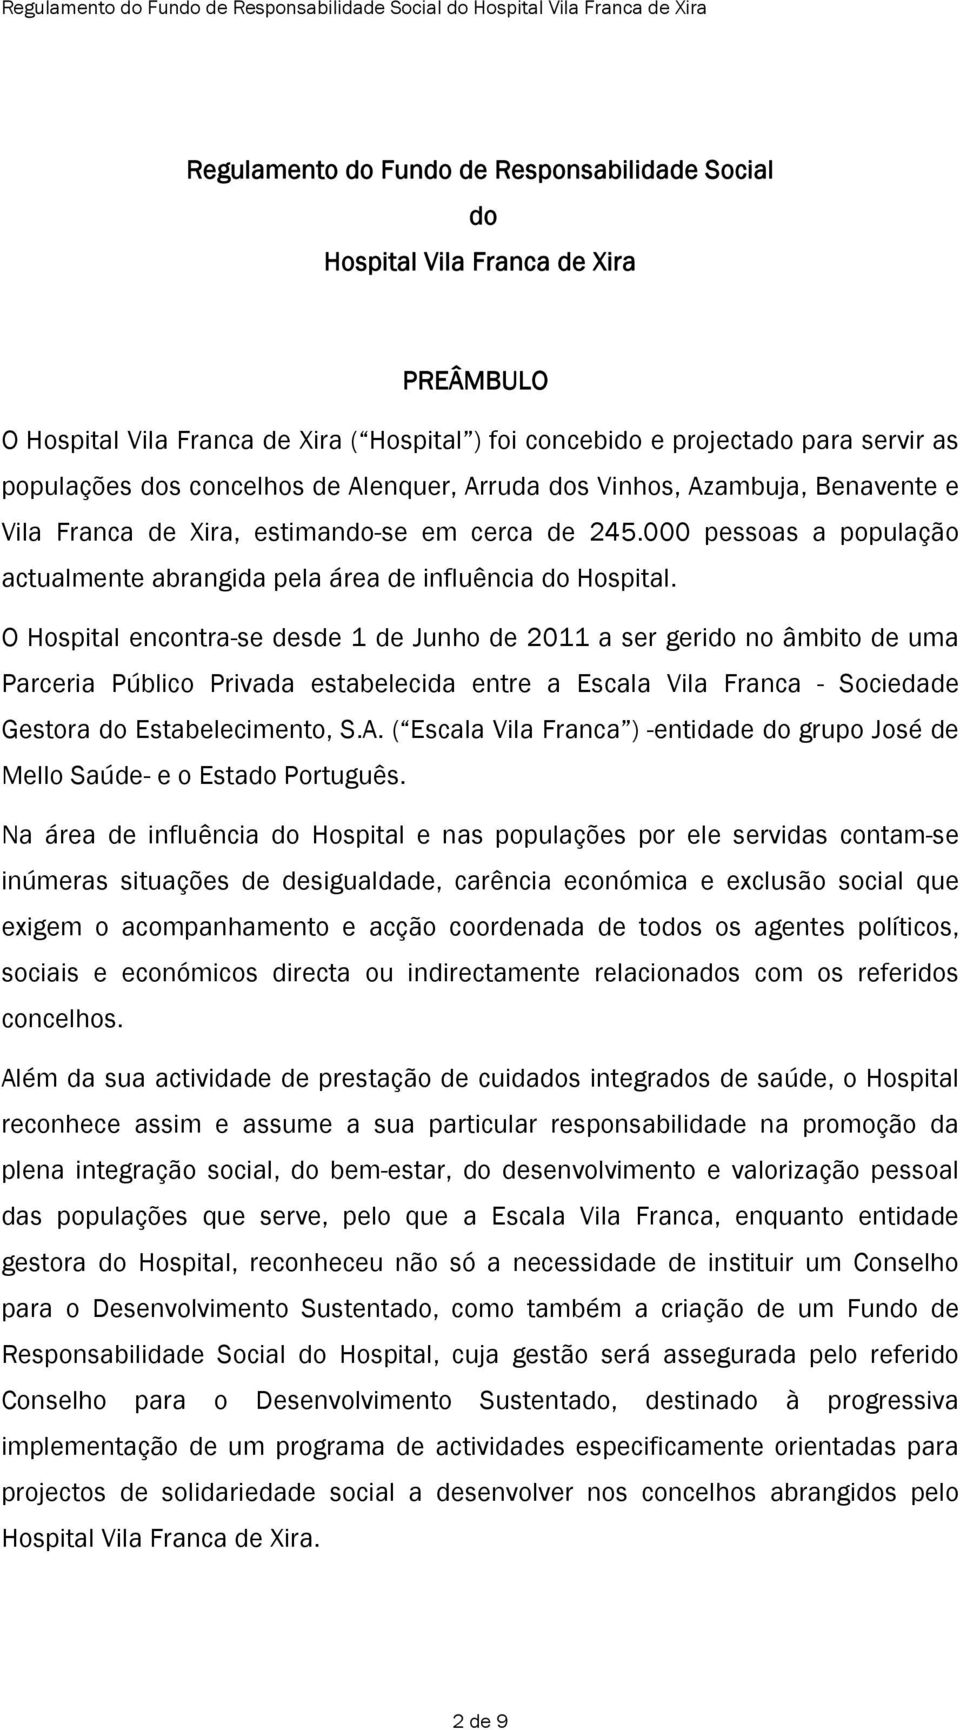 O Hospital encontra-se desde 1 de Junho de 2011 a ser gerido no âmbito de uma Parceria Público Privada estabelecida entre a Escala Vila Franca - Sociedade Gestora do Estabelecimento, S.A.